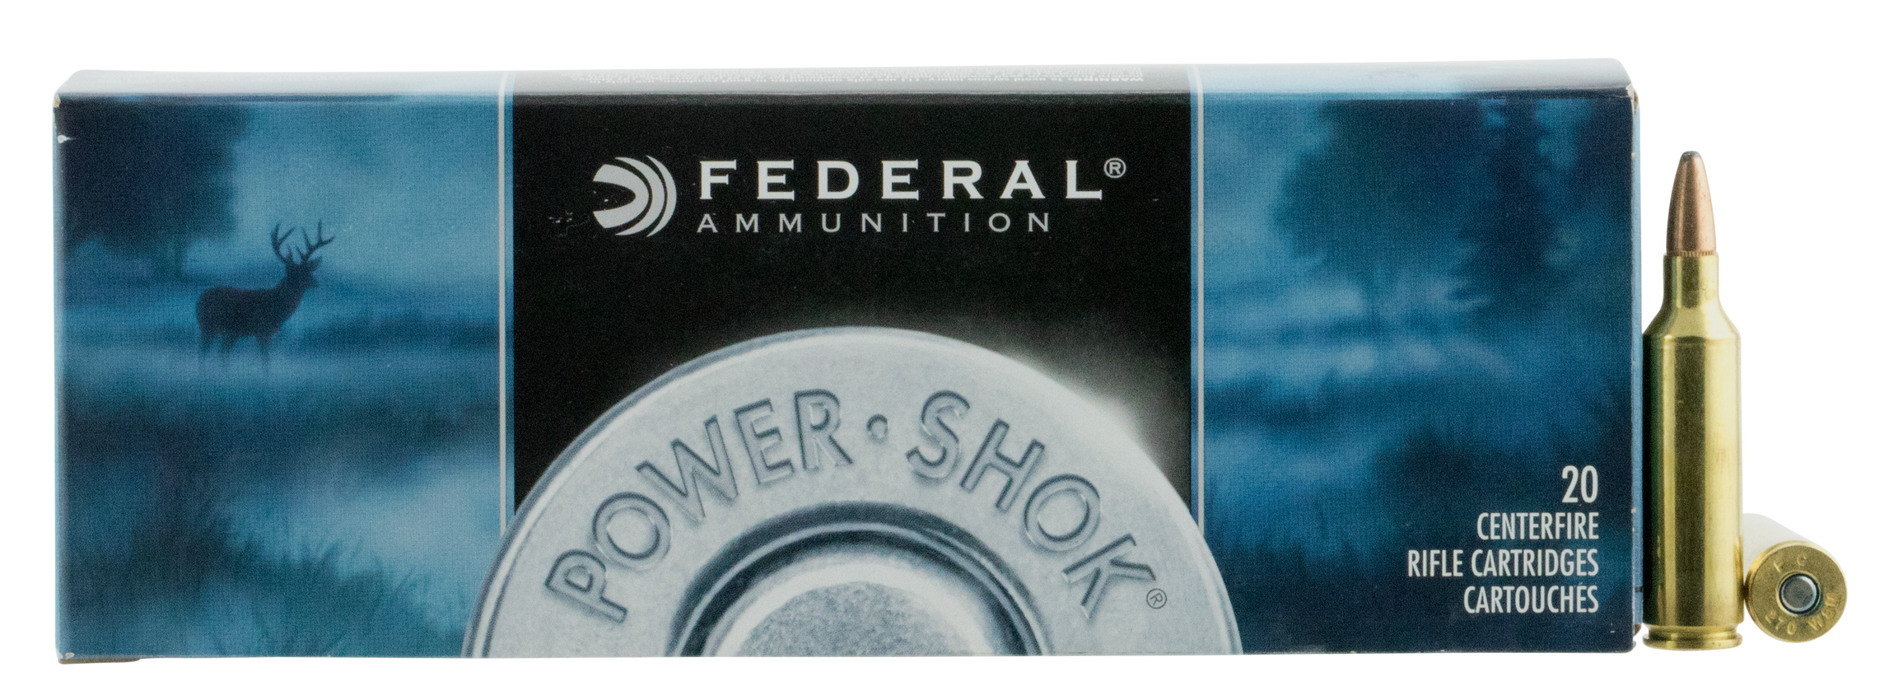 Federal Power-shok, Fed 270wsme        270wsm  130 Sp           20/10